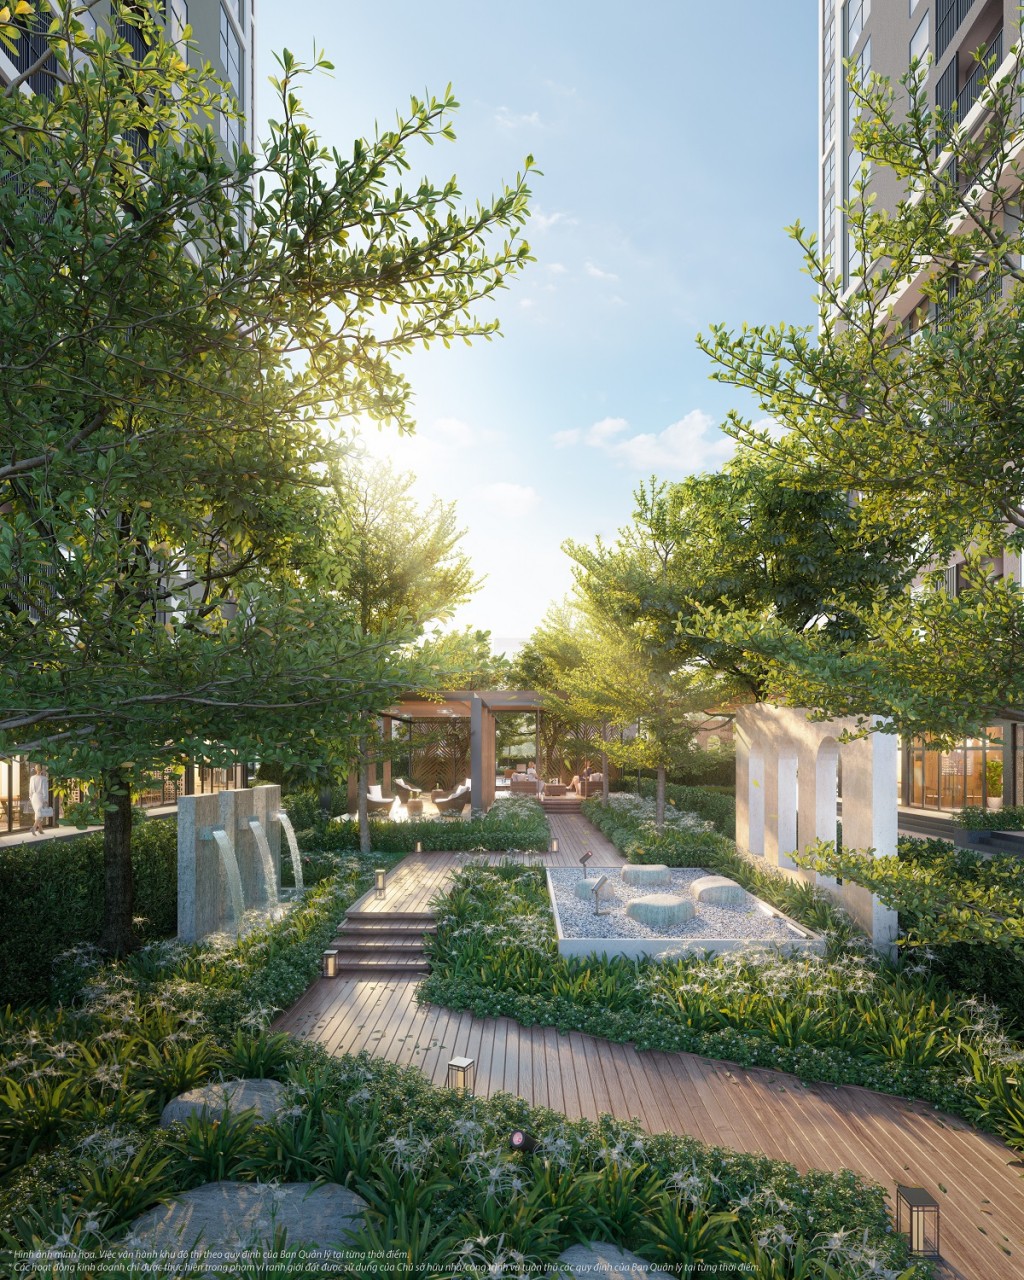 The Canopy Residences với mật độ cây xanh cao nhất toàn dự án, mang tới cuộc sống chan hoà dưới tán cây cho cư dân của thời đại mới